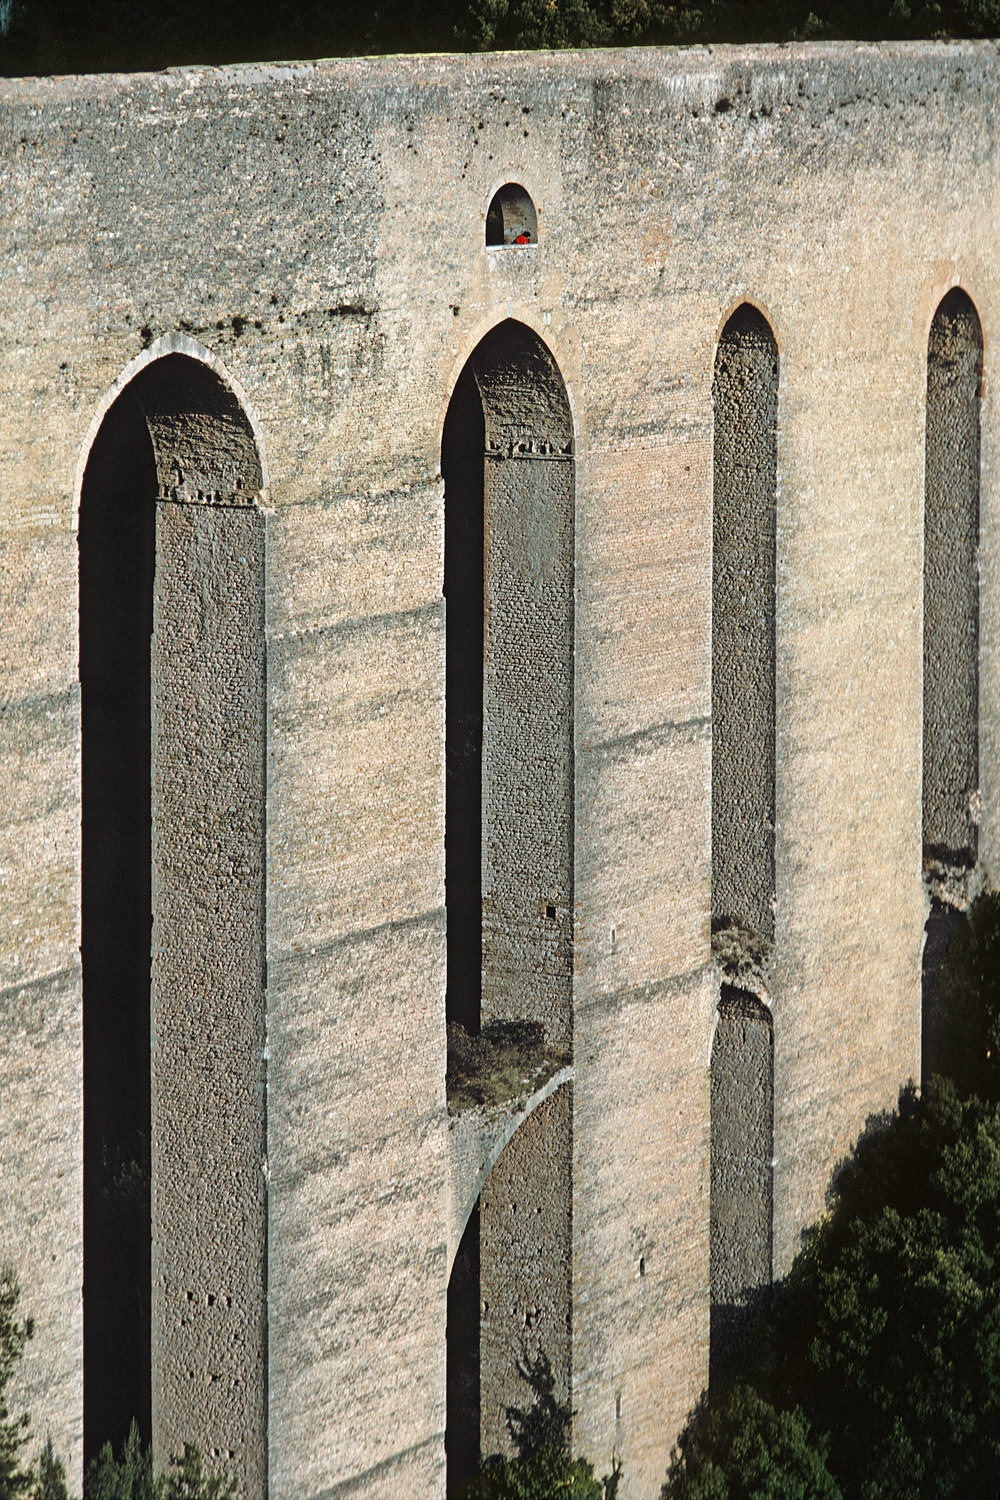 bill-hocker-ponte-della-torri-spoleto-italy-1986